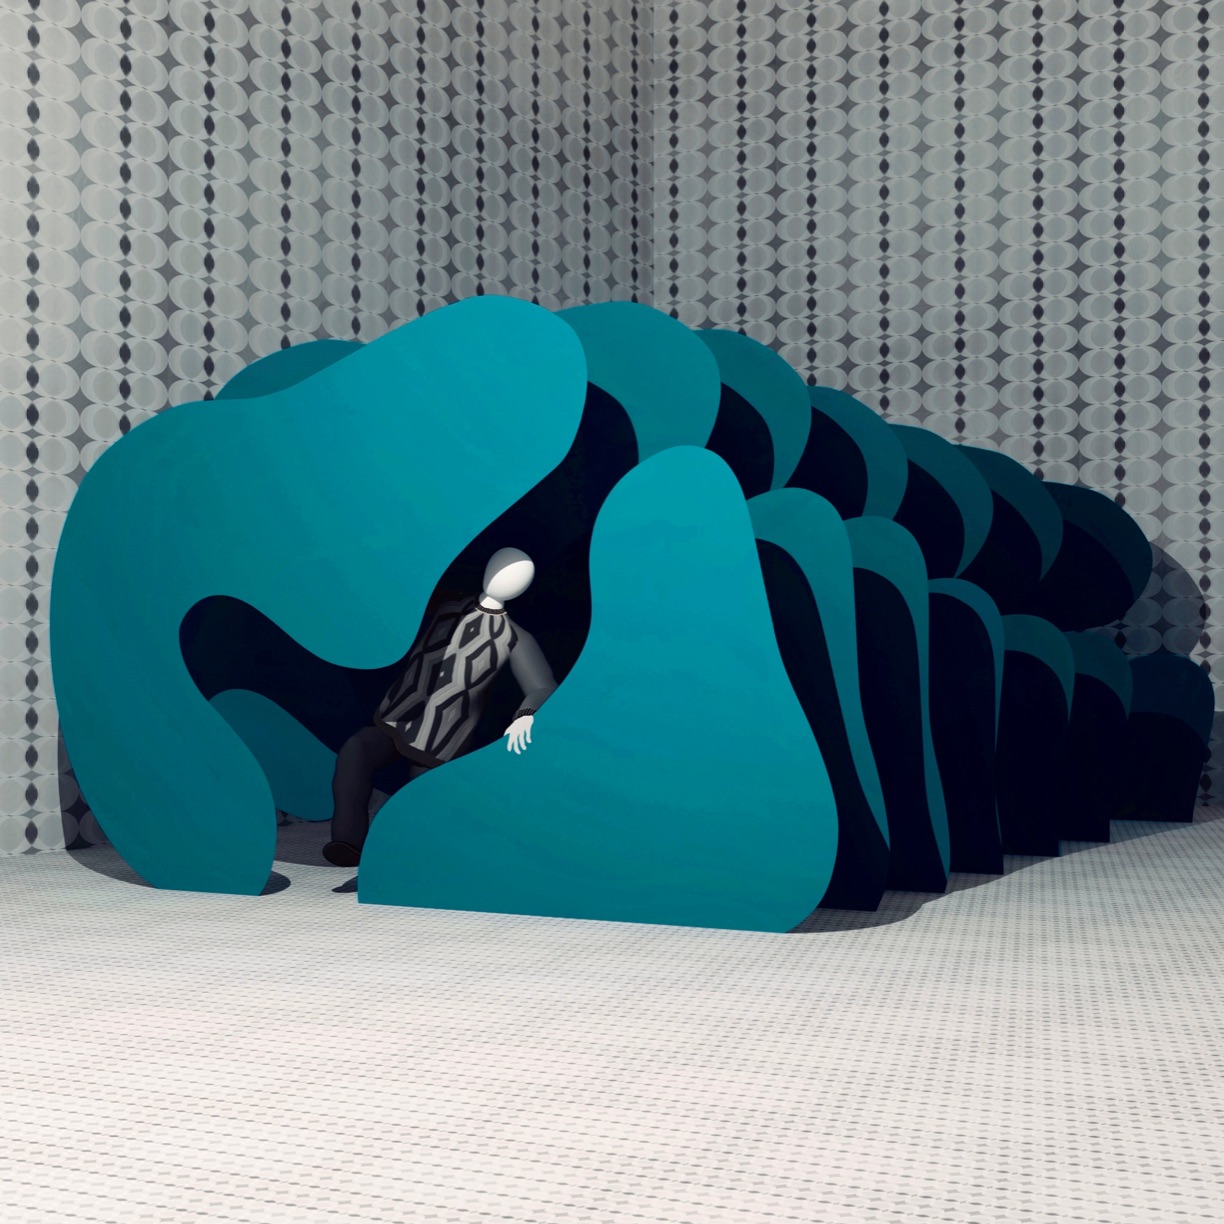 Atsushigraphのデジタルアート作品「Shelter 2」の画像です。